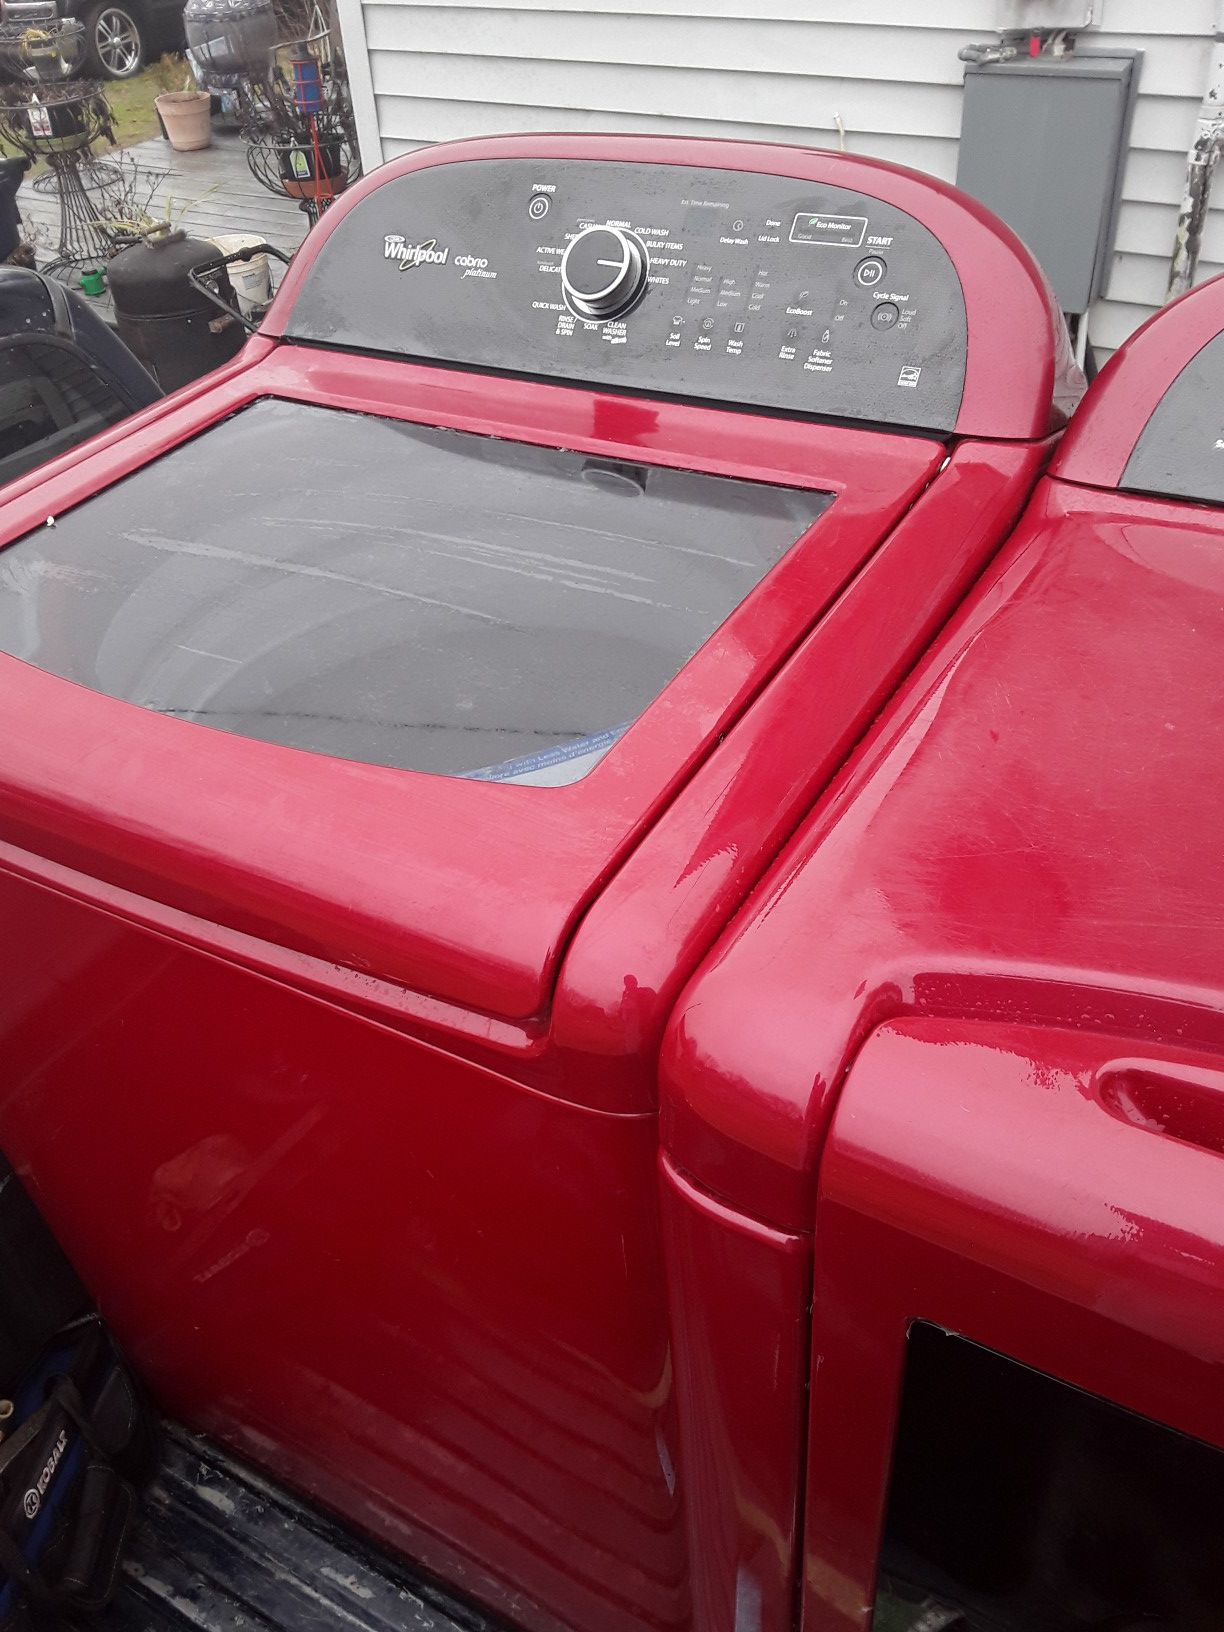 Cranberry whirlpool cabrio platinum washer/dryer set